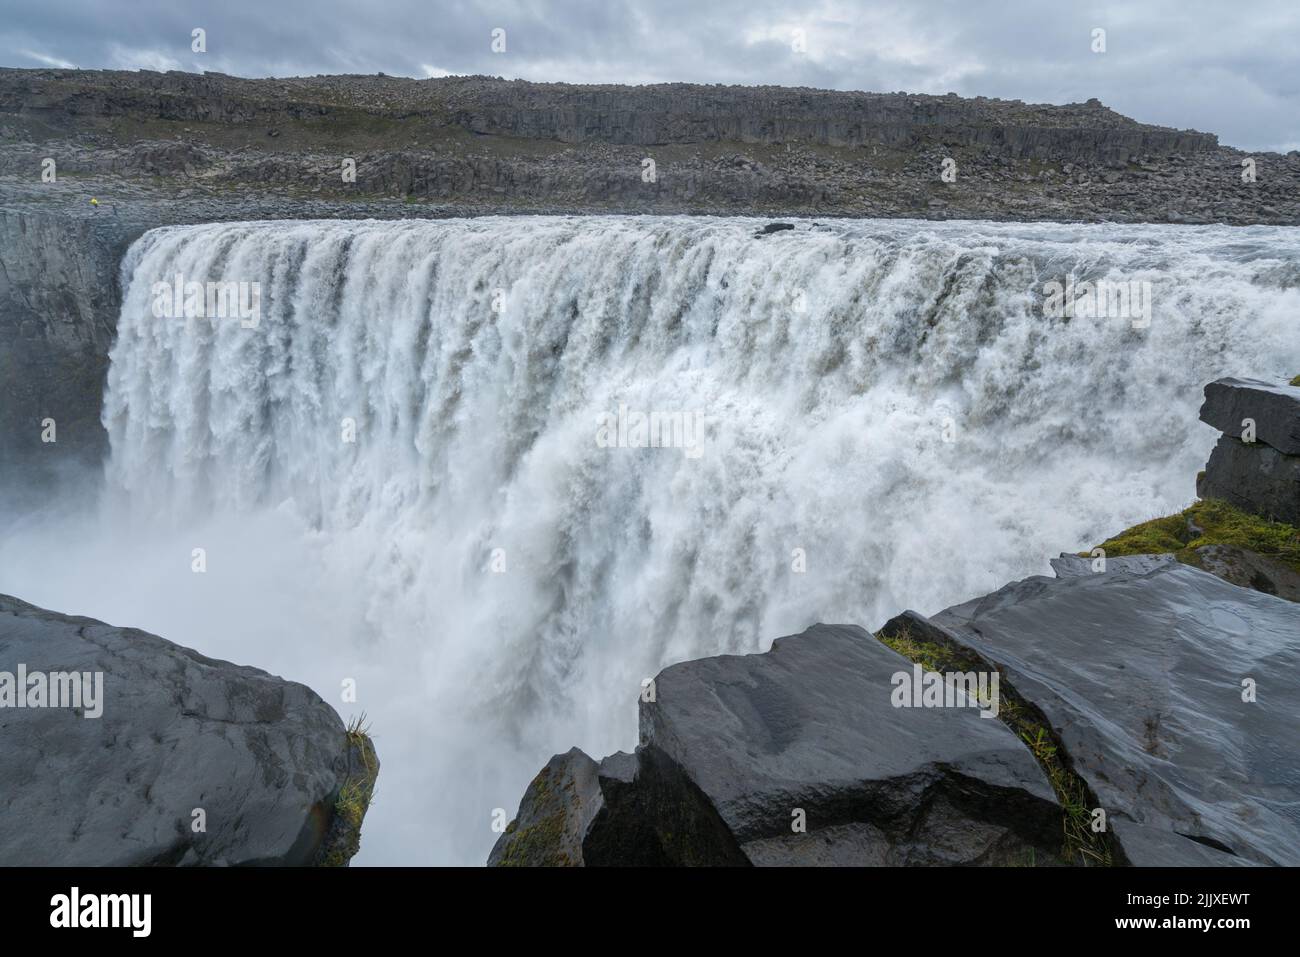 La plus grande cascade d'eau d'Europe, Dettifoss. Eaux boueuses tombant sur le bord. Majestueuse cascade islandaise par jour pluvieux et nuageux. Banque D'Images